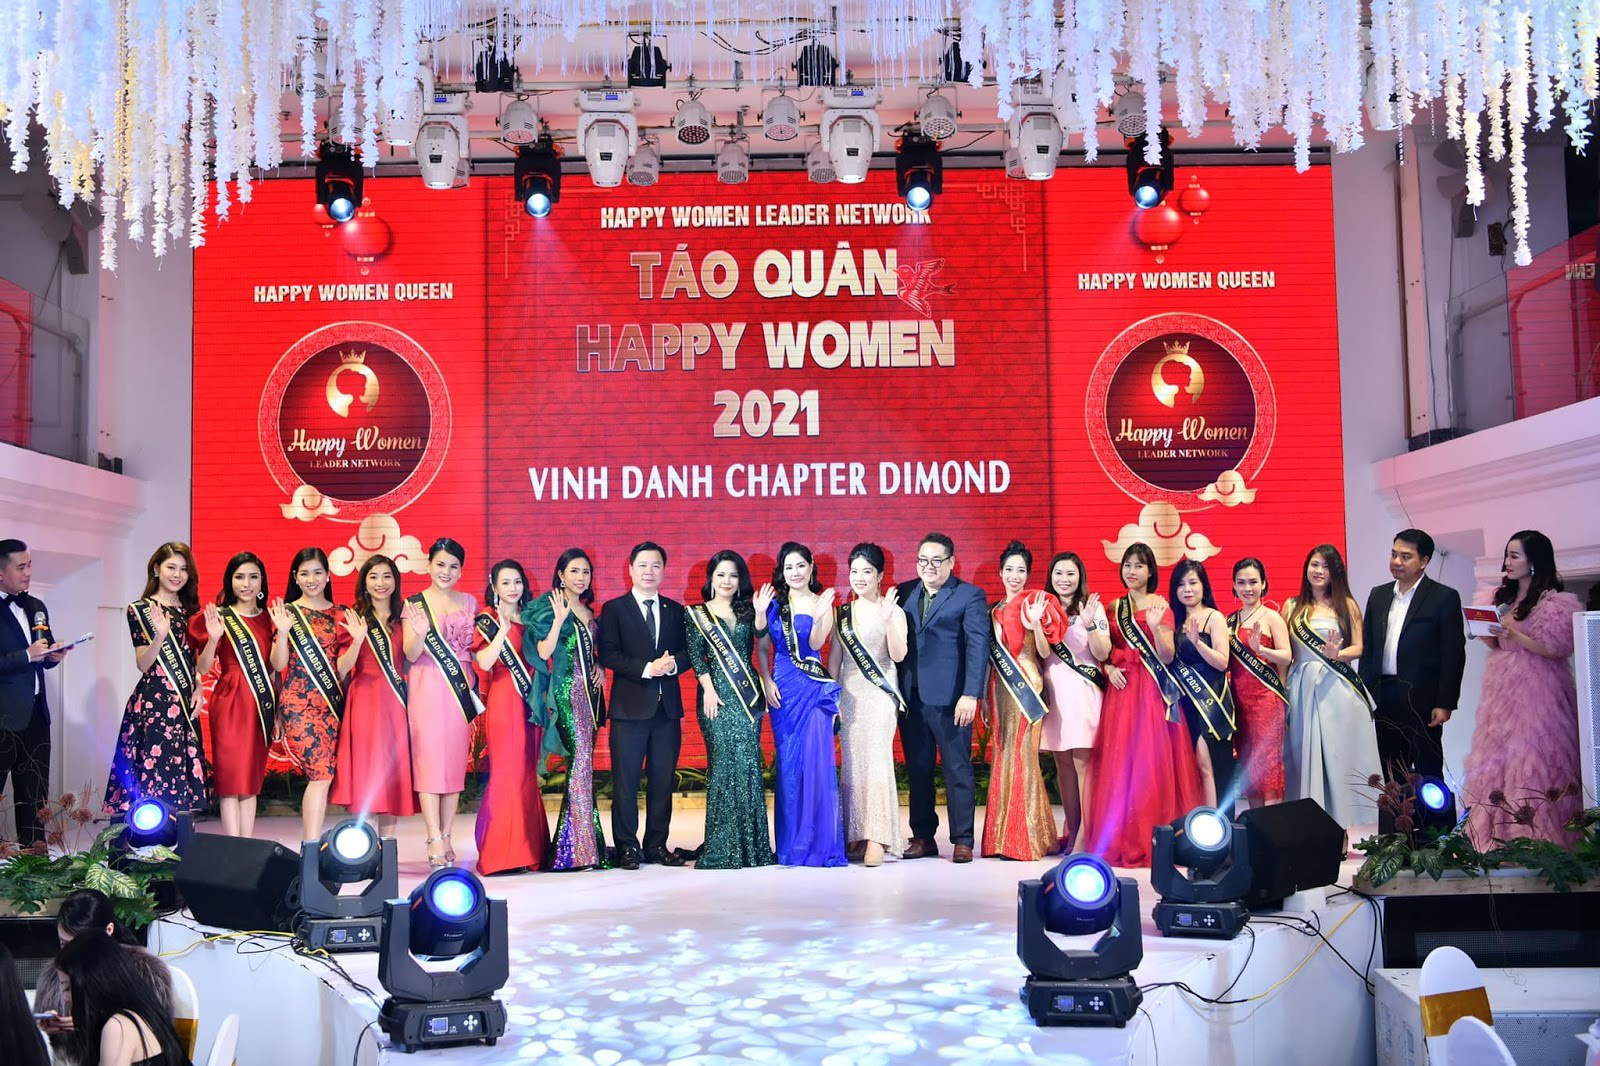 Chân dung Bùi Thanh Hương - Chủ tịch Happy Women - Trưởng ban tổ chức Táo quân 2021 - Ảnh 2.